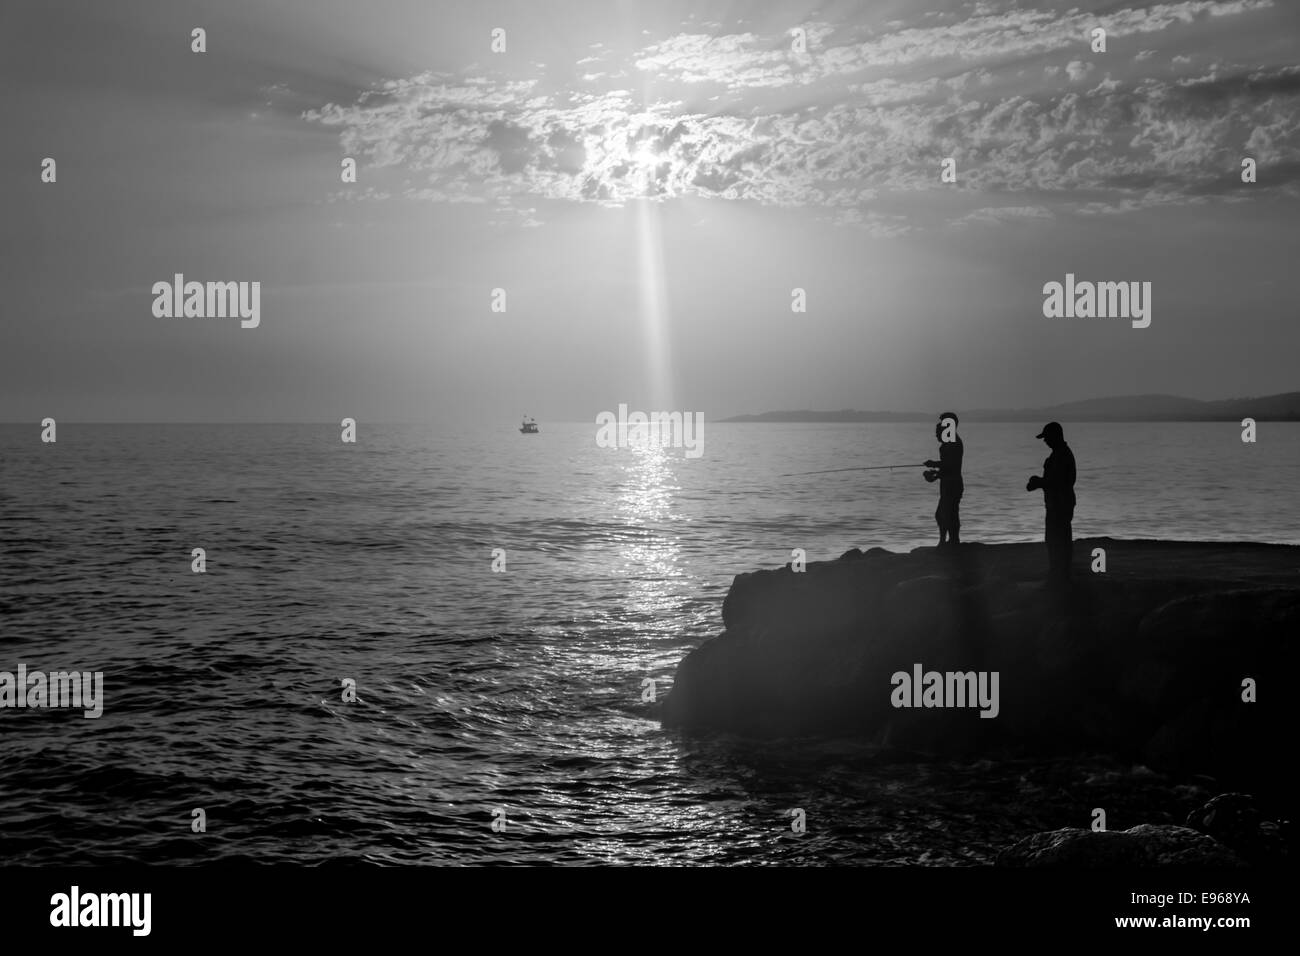 Am Abend Angeln am Mittelmeer. Turkei. Silhouette der Fischer. Schwarz und weiß. Stockfoto